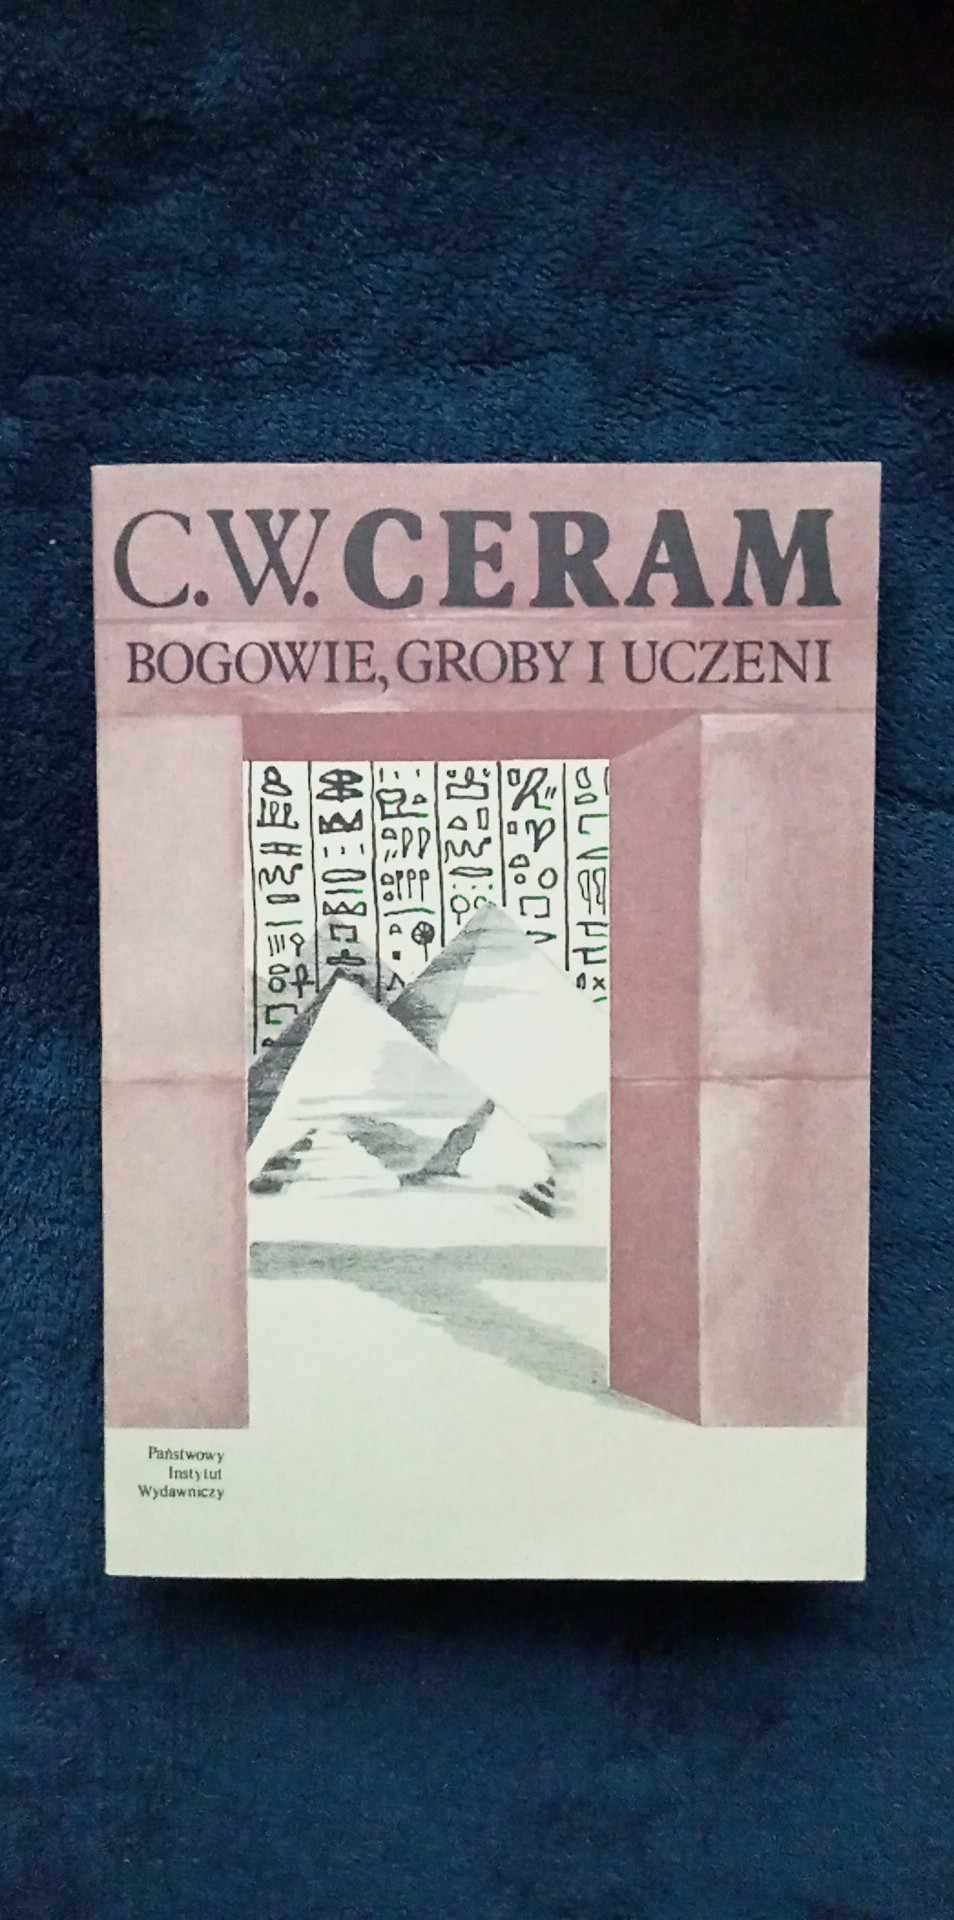 C.W. Ceram - Bogowie, groby i uczeni